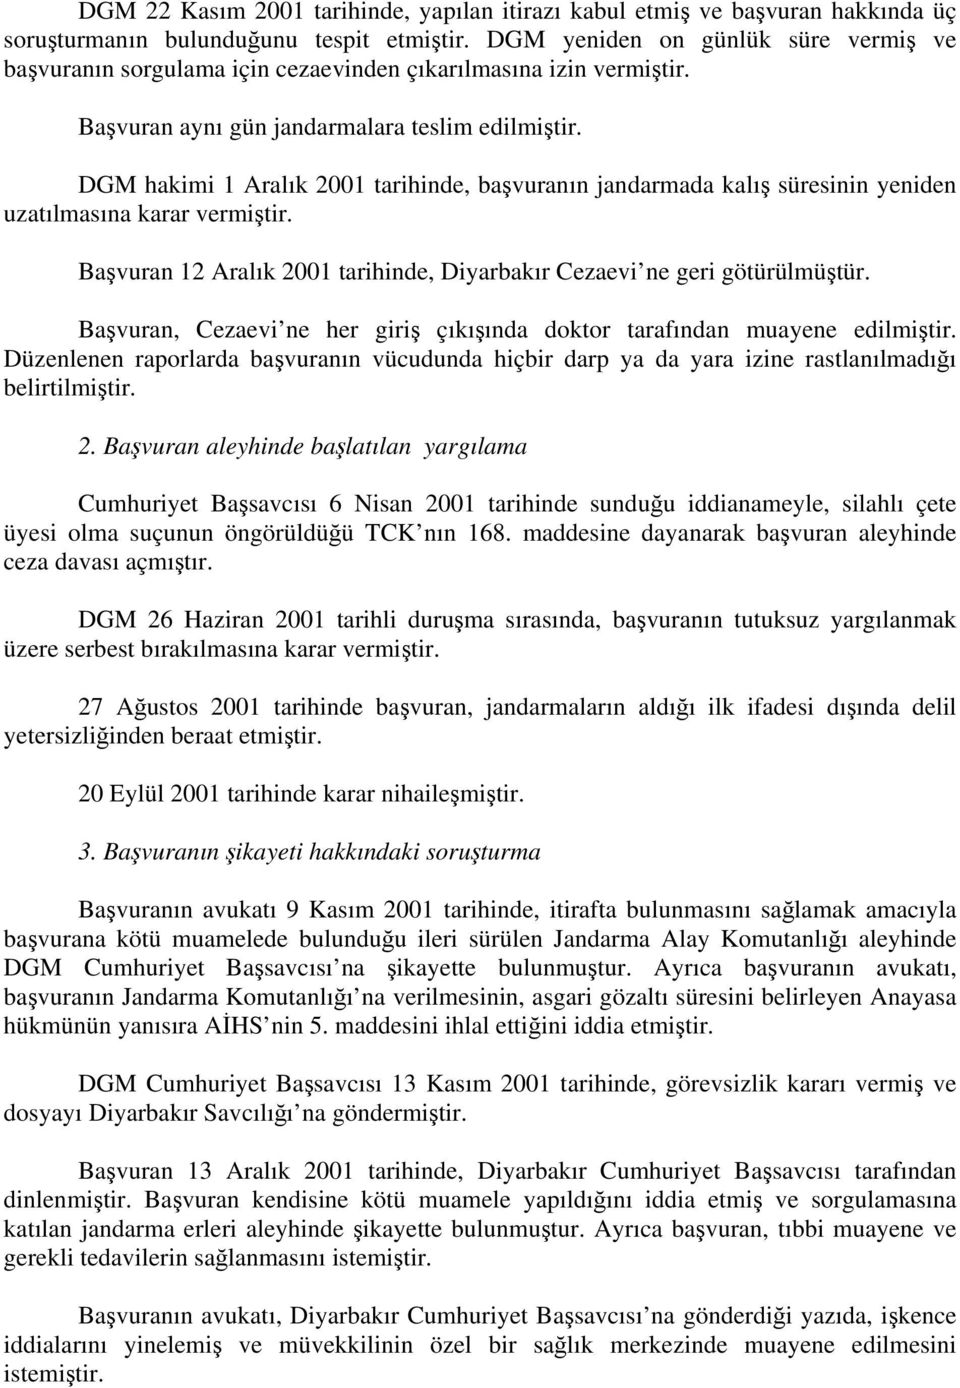 DGM hakimi 1 Aralık 2001 tarihinde, başvuranın jandarmada kalış süresinin yeniden uzatılmasına karar vermiştir. Başvuran 12 Aralık 2001 tarihinde, Diyarbakır Cezaevi ne geri götürülmüştür.